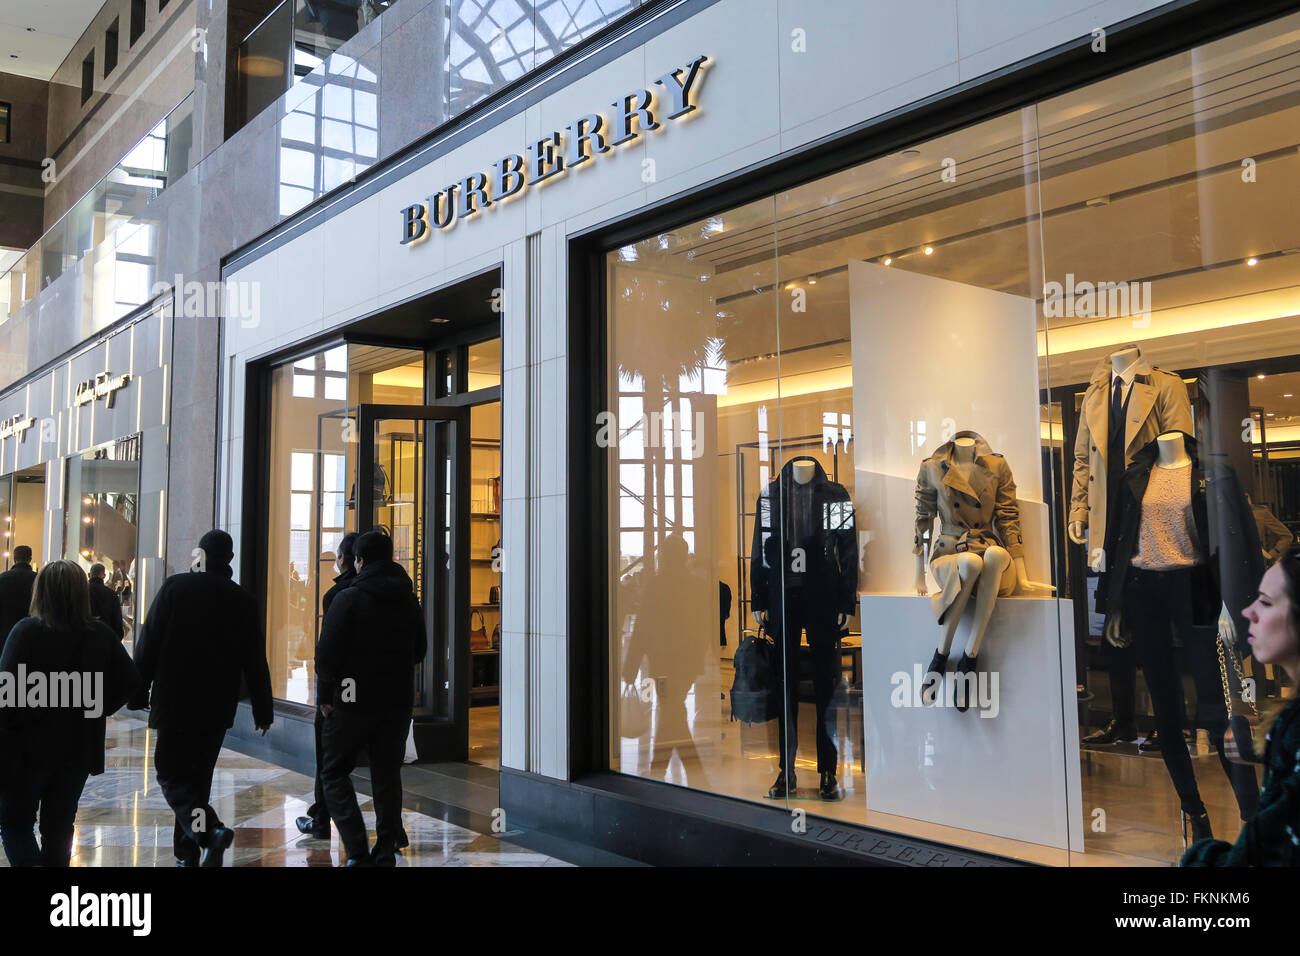 burberry sale online shop